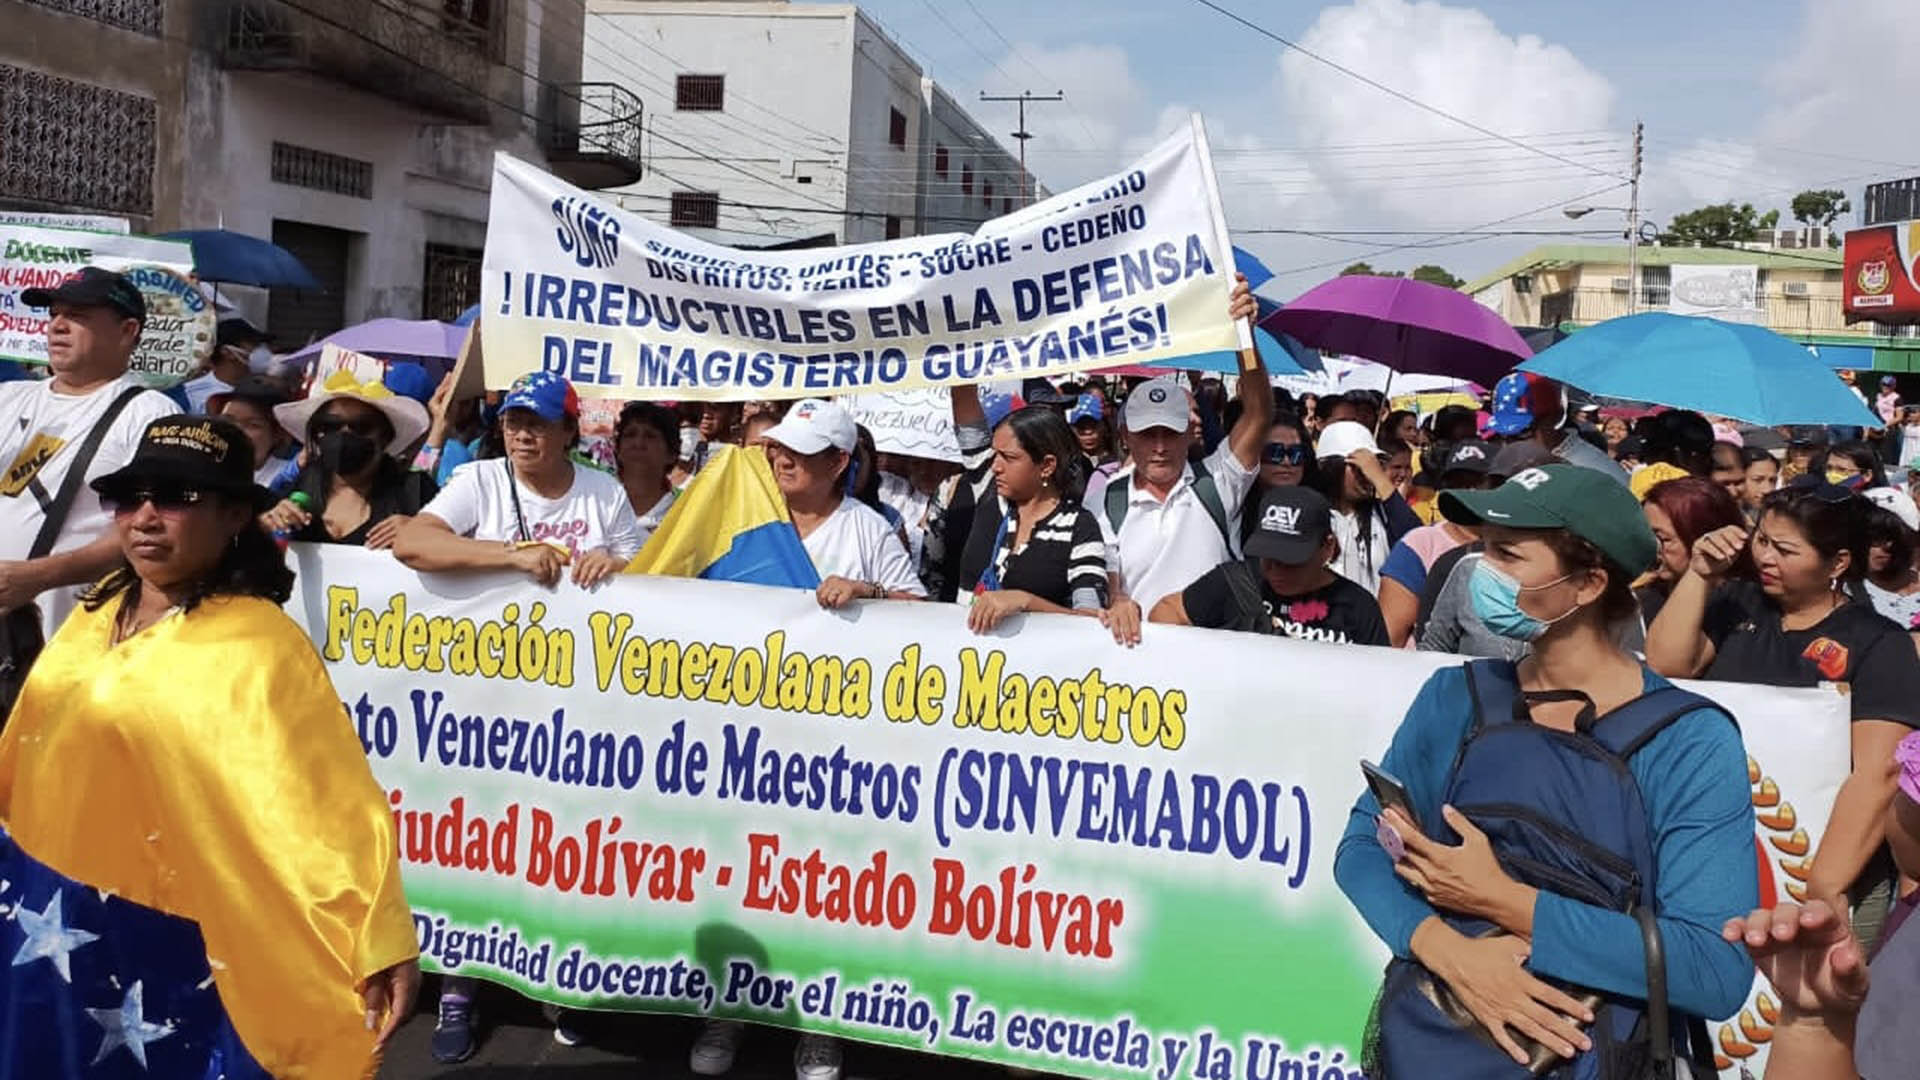 Ante las divisiones en el chavismo y la oposición, cobra fuerza la protesta de maestros y obreros, y las nuevas opciones políticas